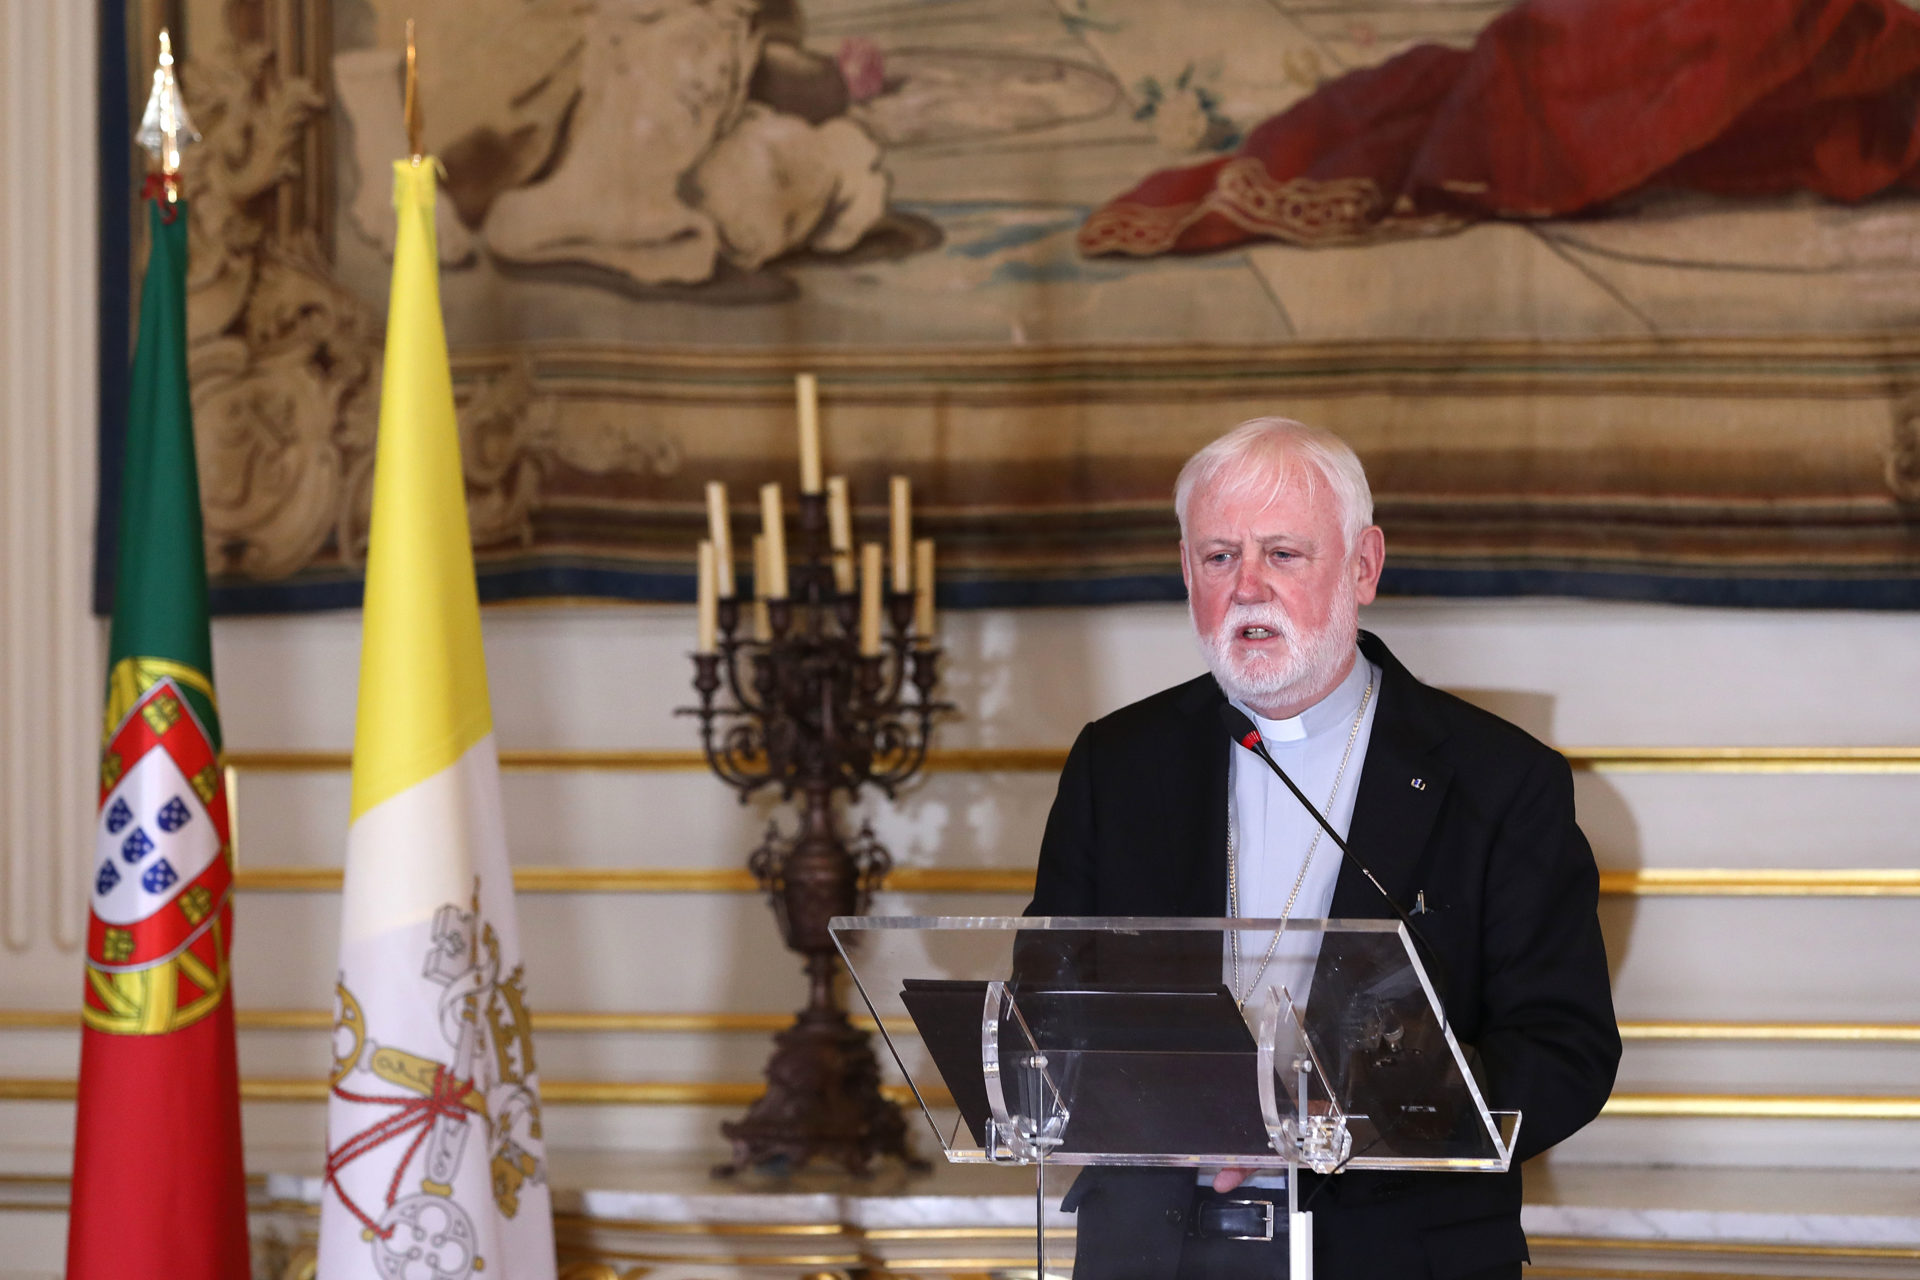 Архиепископ Галлахер: «Ватикан против идеи о причислении права на аборт к правам человека»